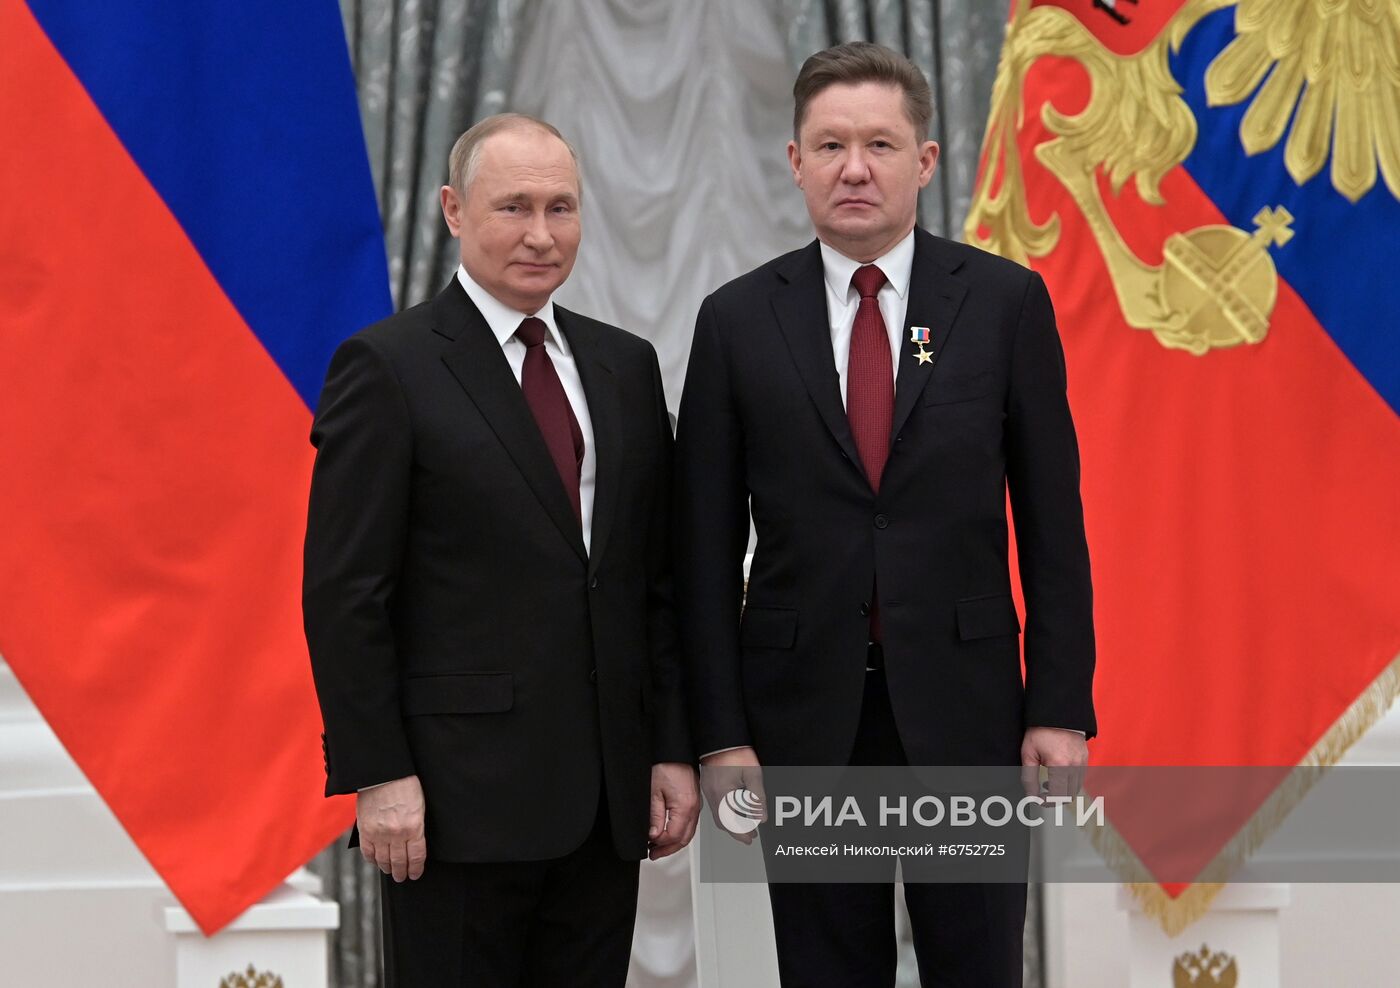 Президент РФ В. Путин вручил в Кремле государственные награды